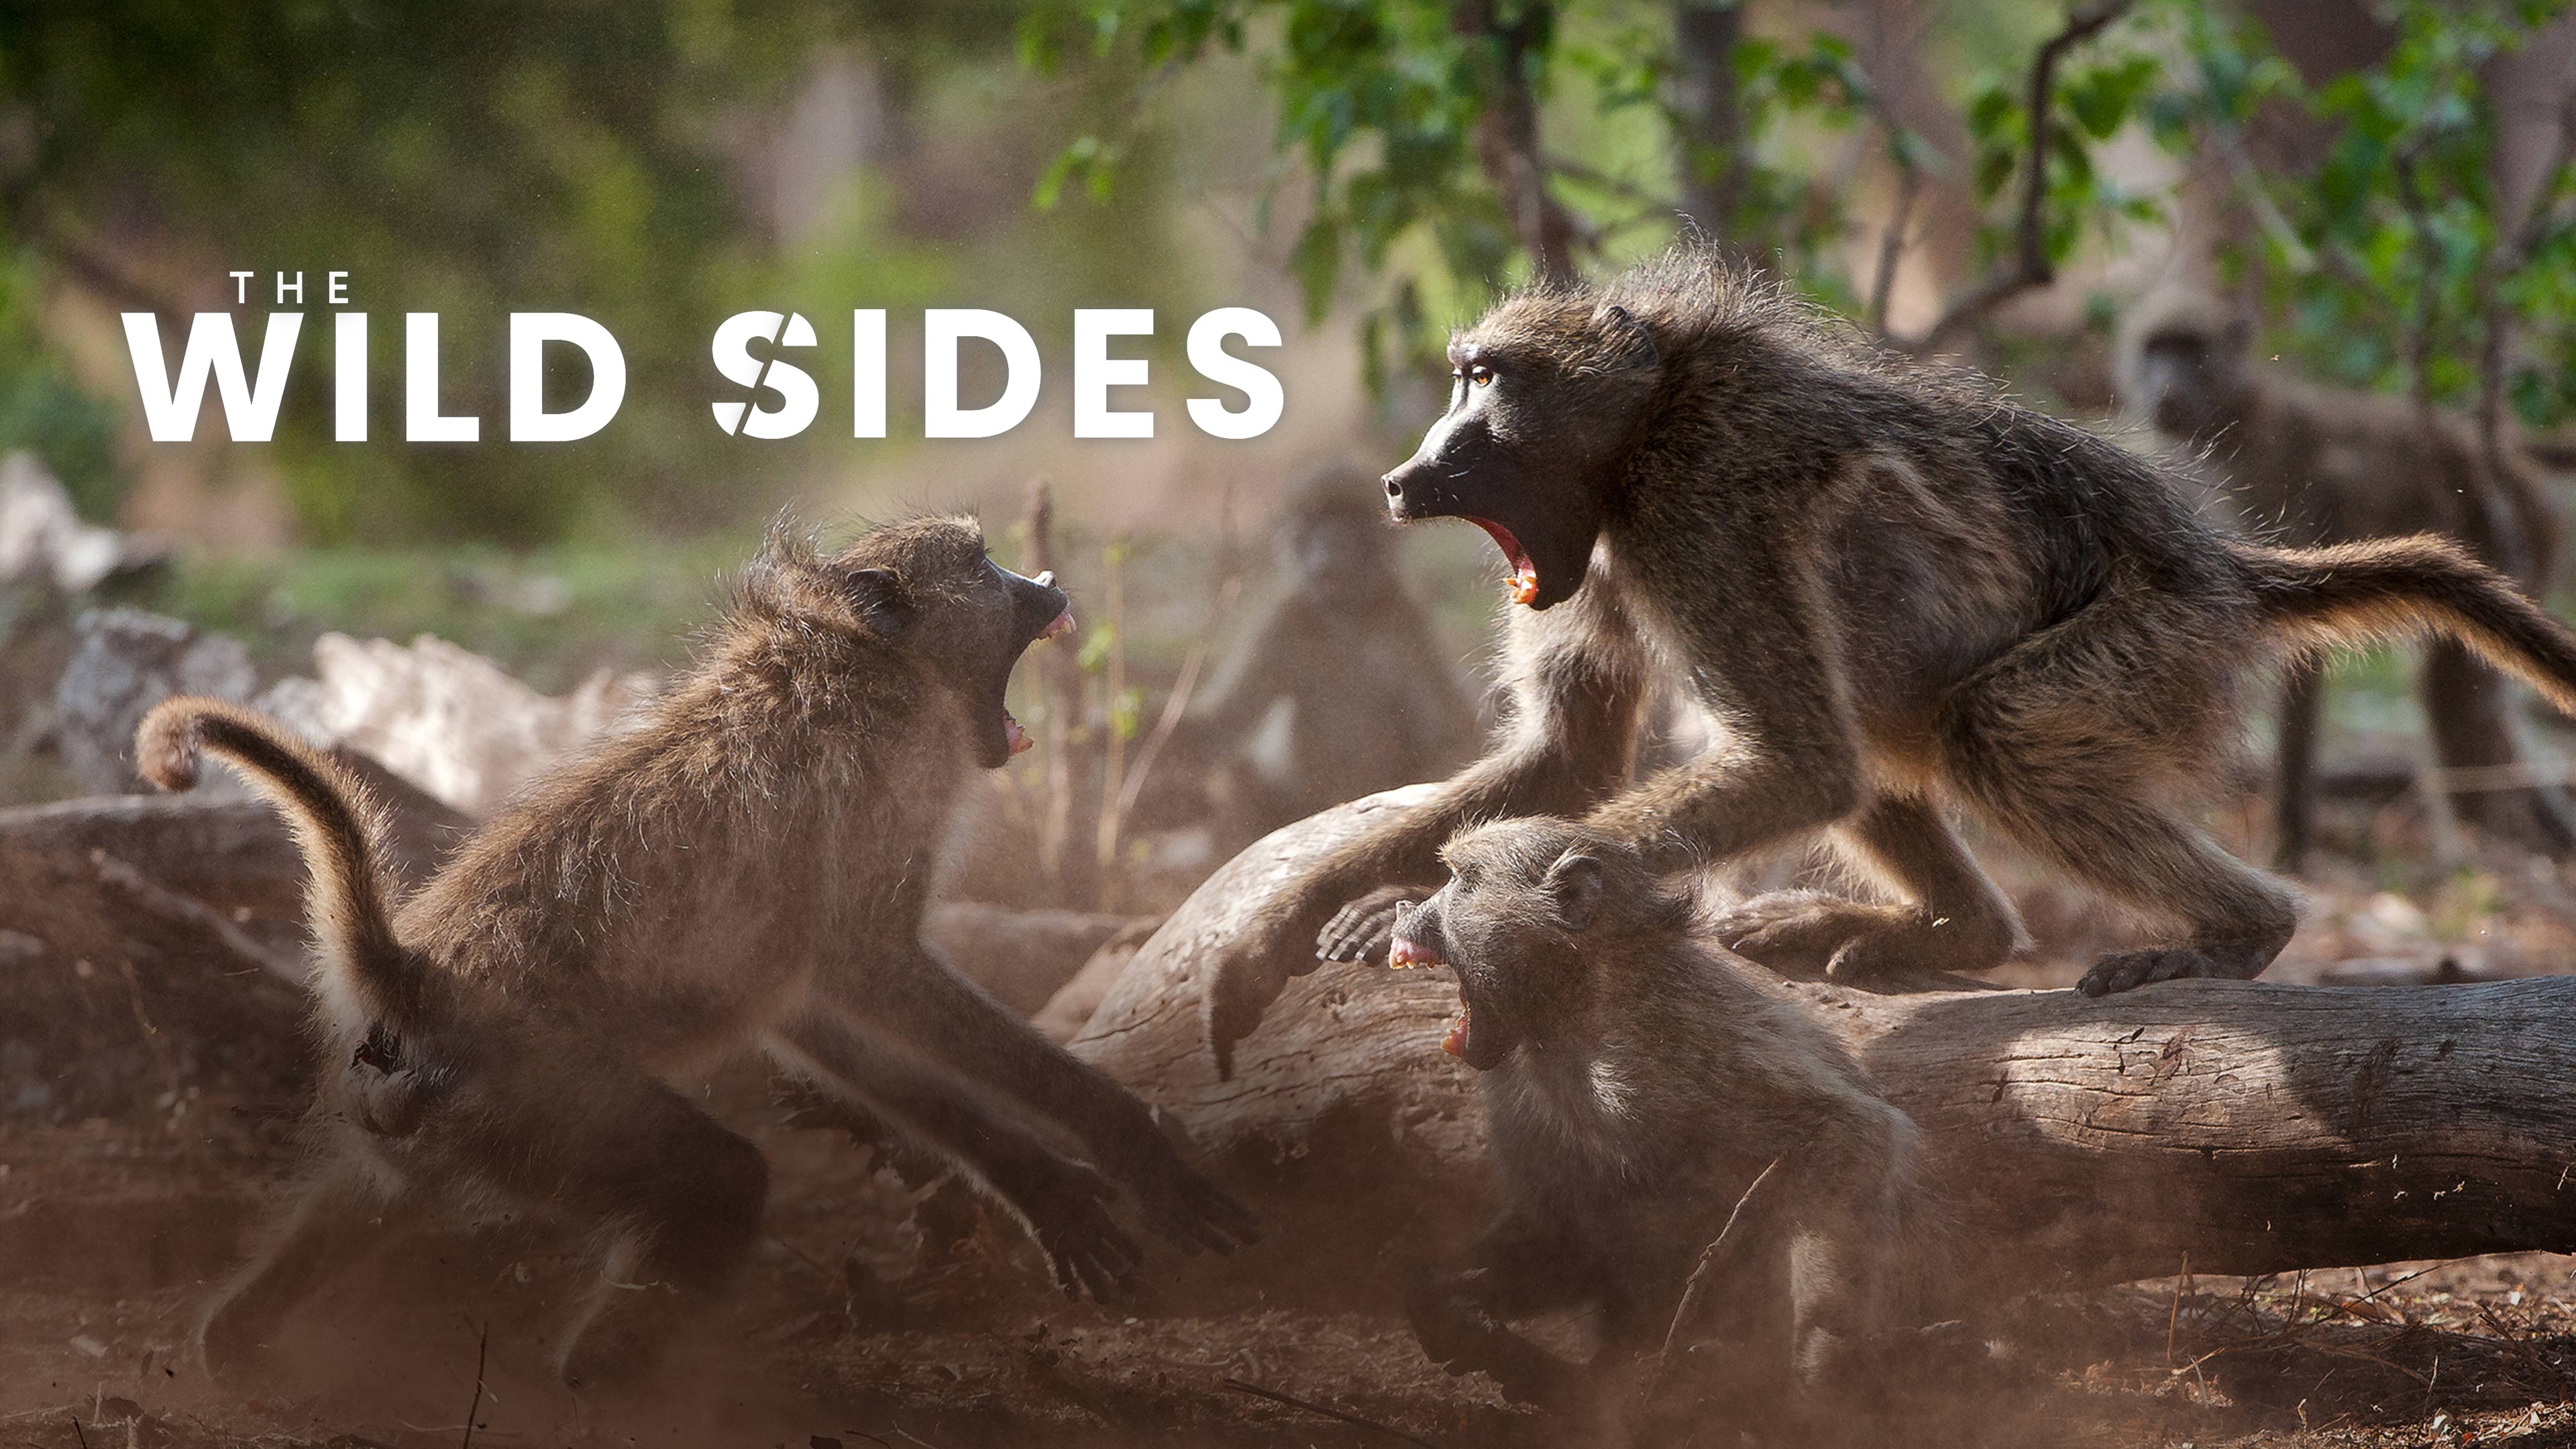 Watch The Wild Sides Online | Stream Full Episodes